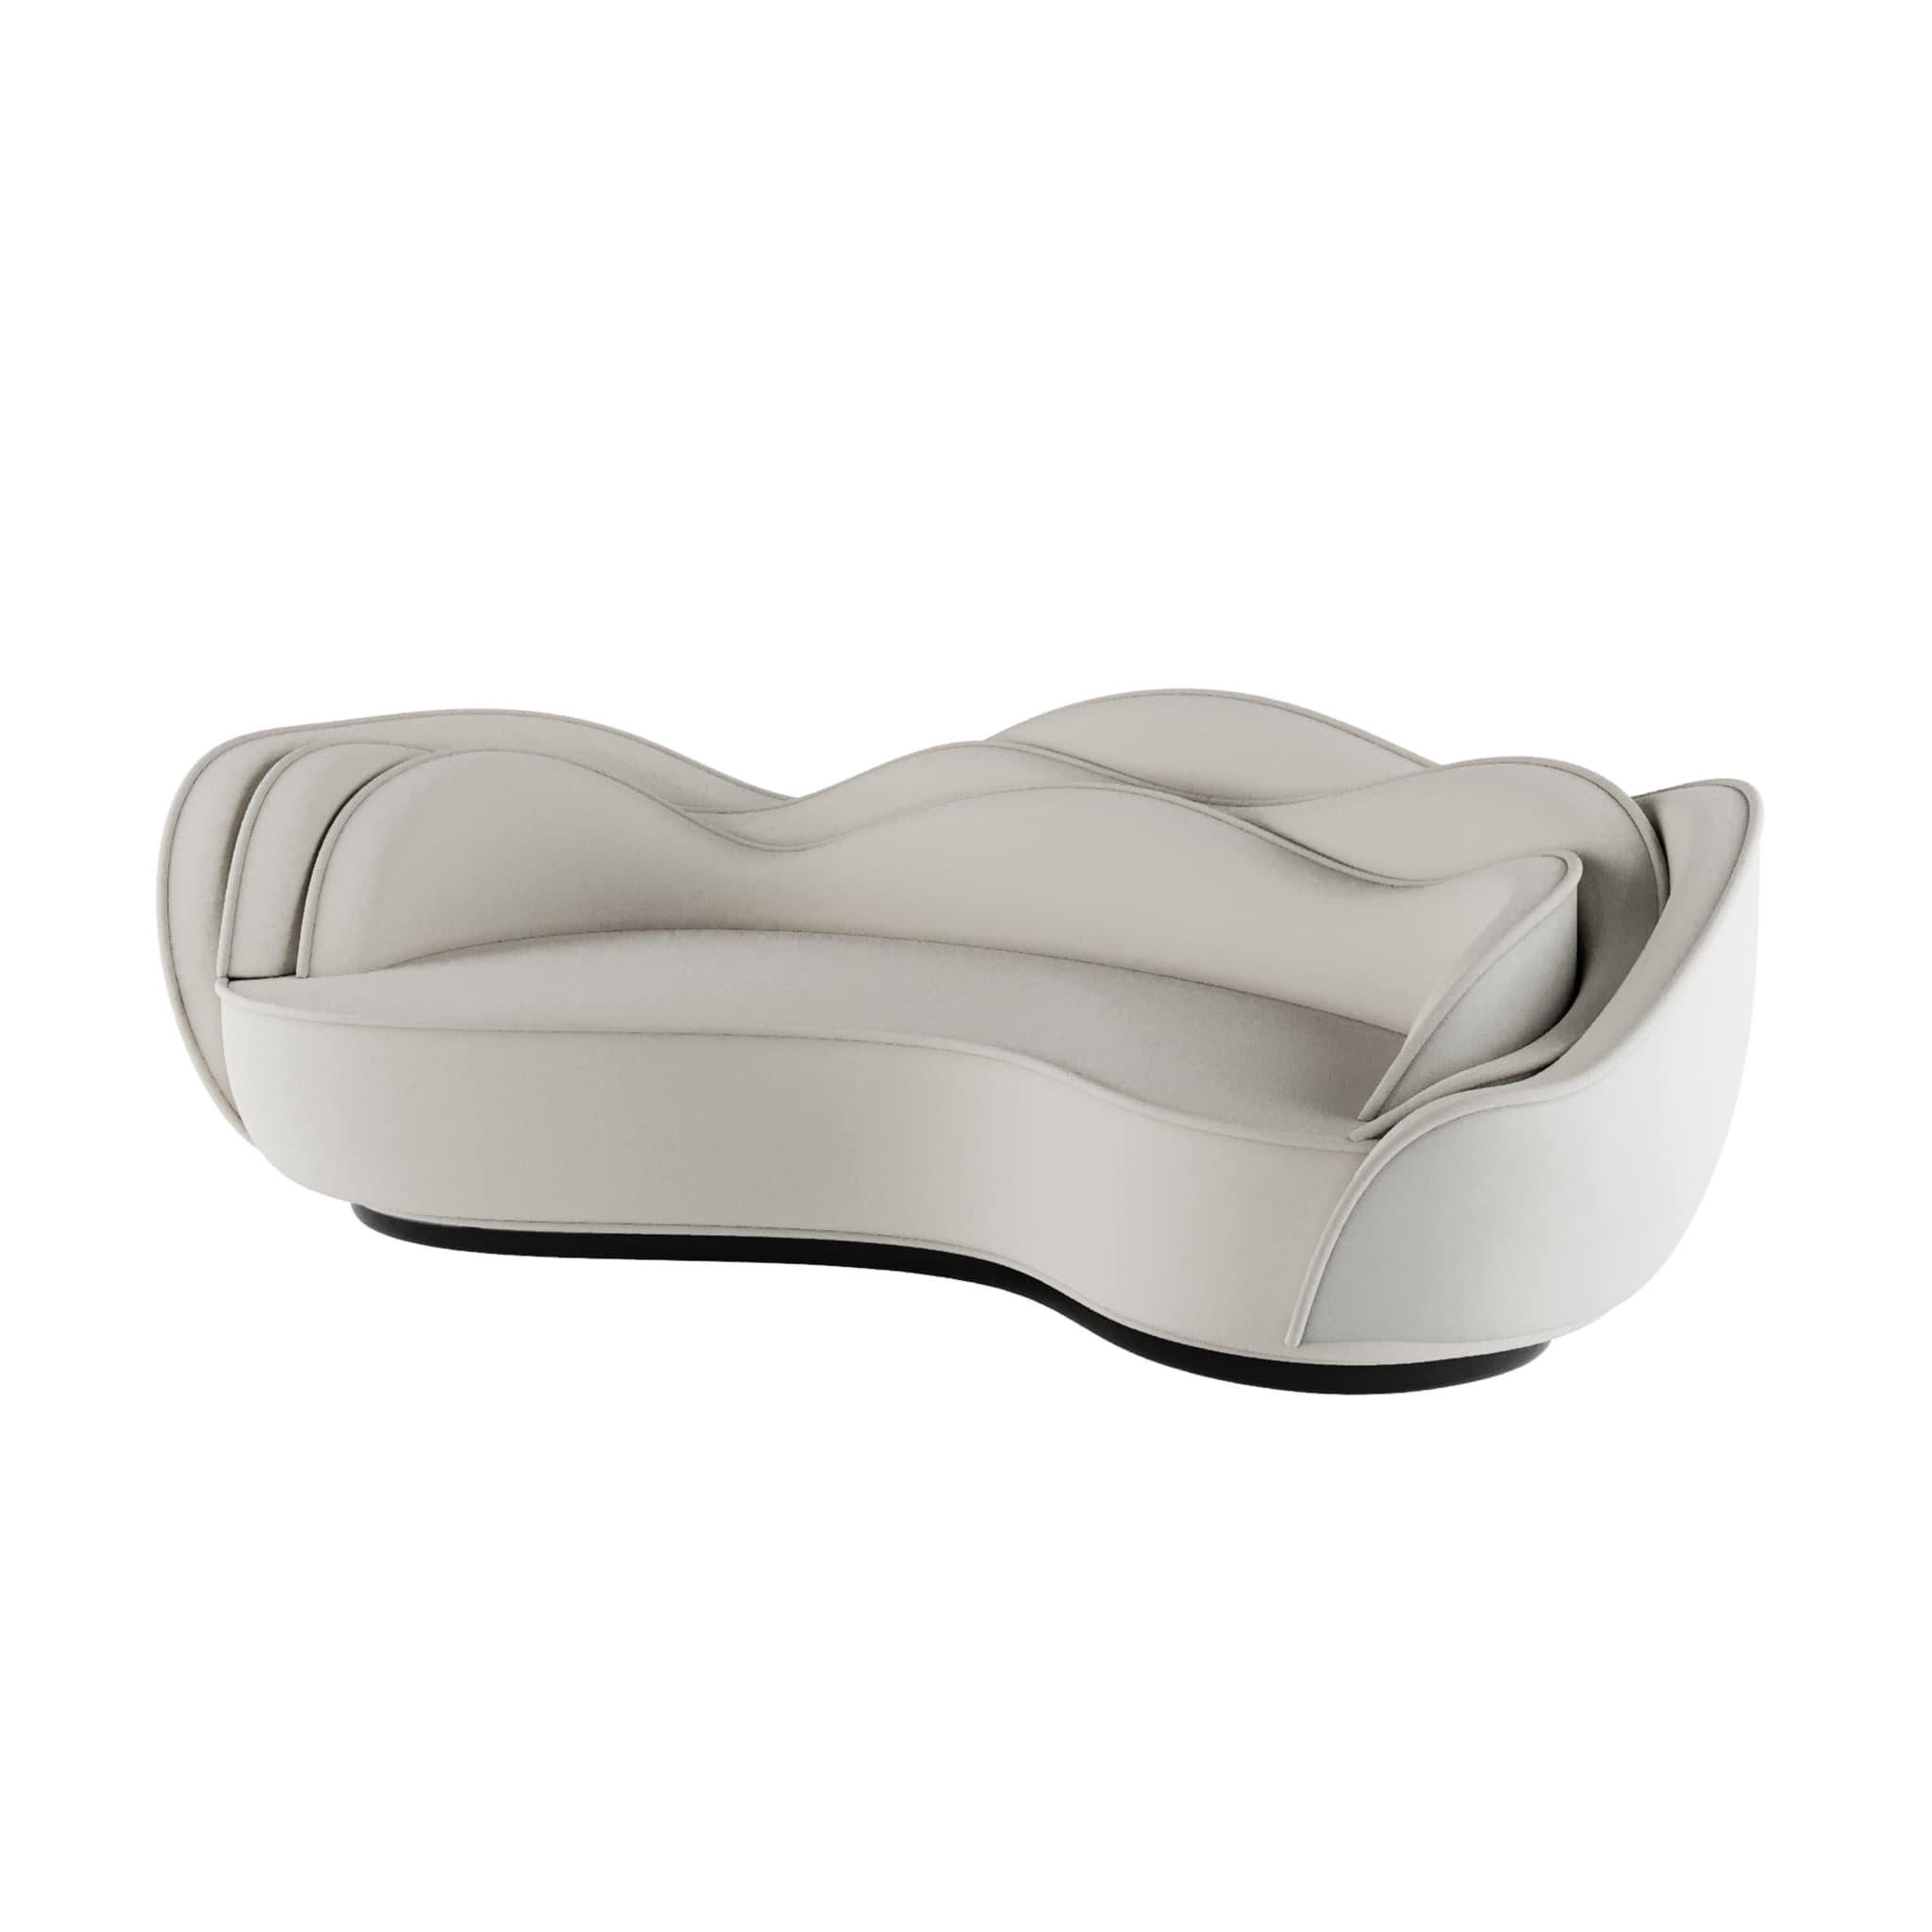 Cadiz Sofa ist ein Sofa im postmodernen Stil mit geschwungenen Formen, das ein Statement setzt, ohne auf Komfort zu verzichten. Die Sofaskulptur hat eine gewellte Rückenlehne, die eine perfekte Abstraktion der weiblichen Schönheit darstellt. Der